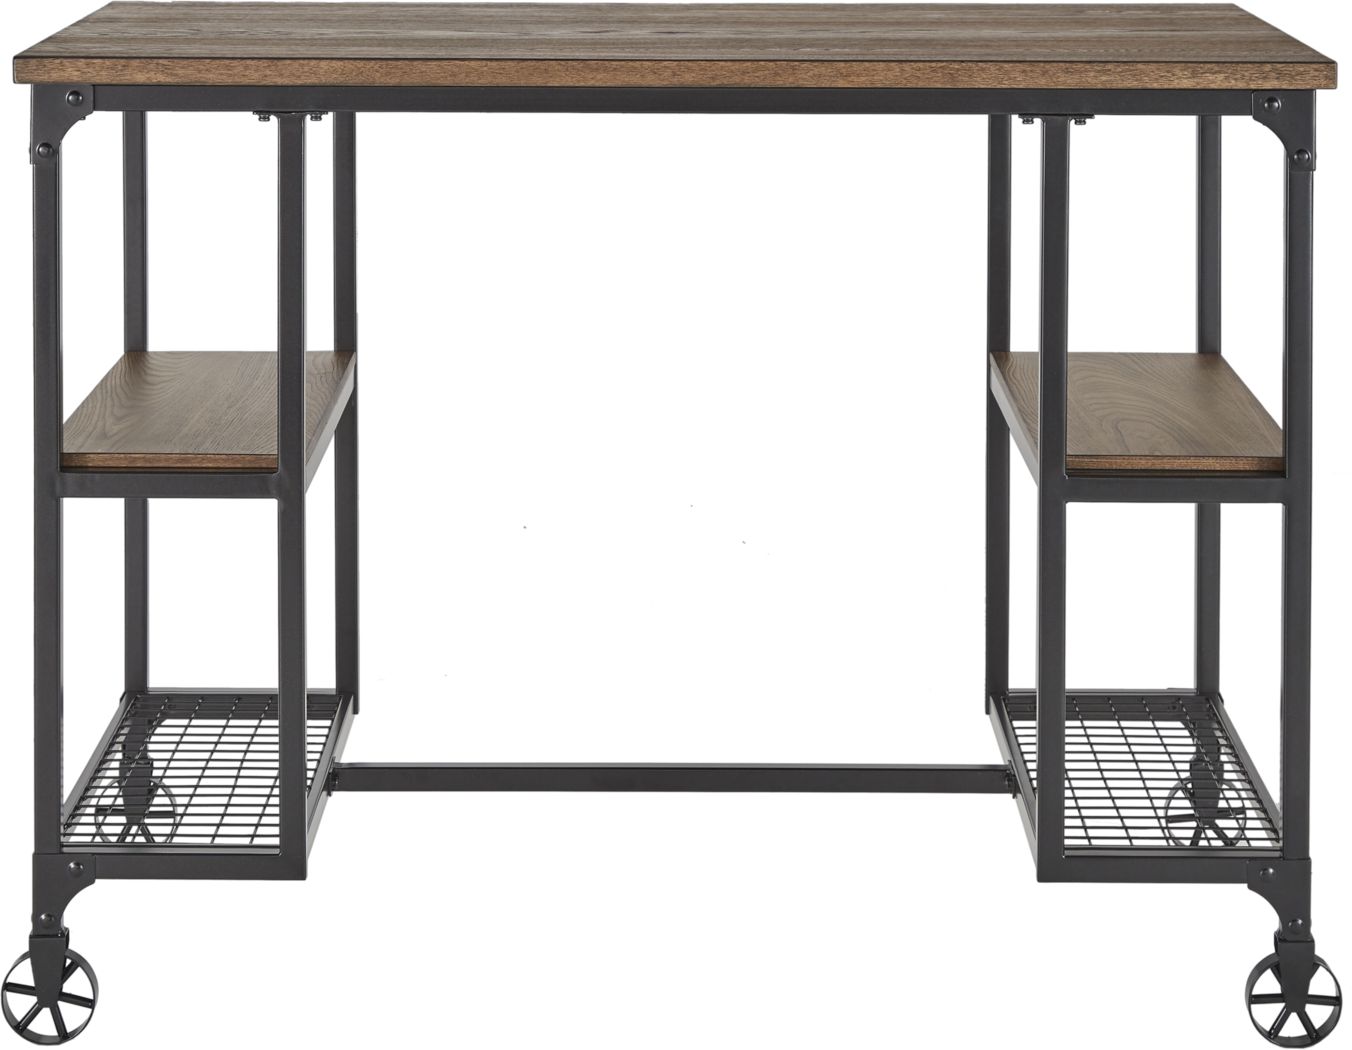 Standing Desks Stand Up Desks For Sale